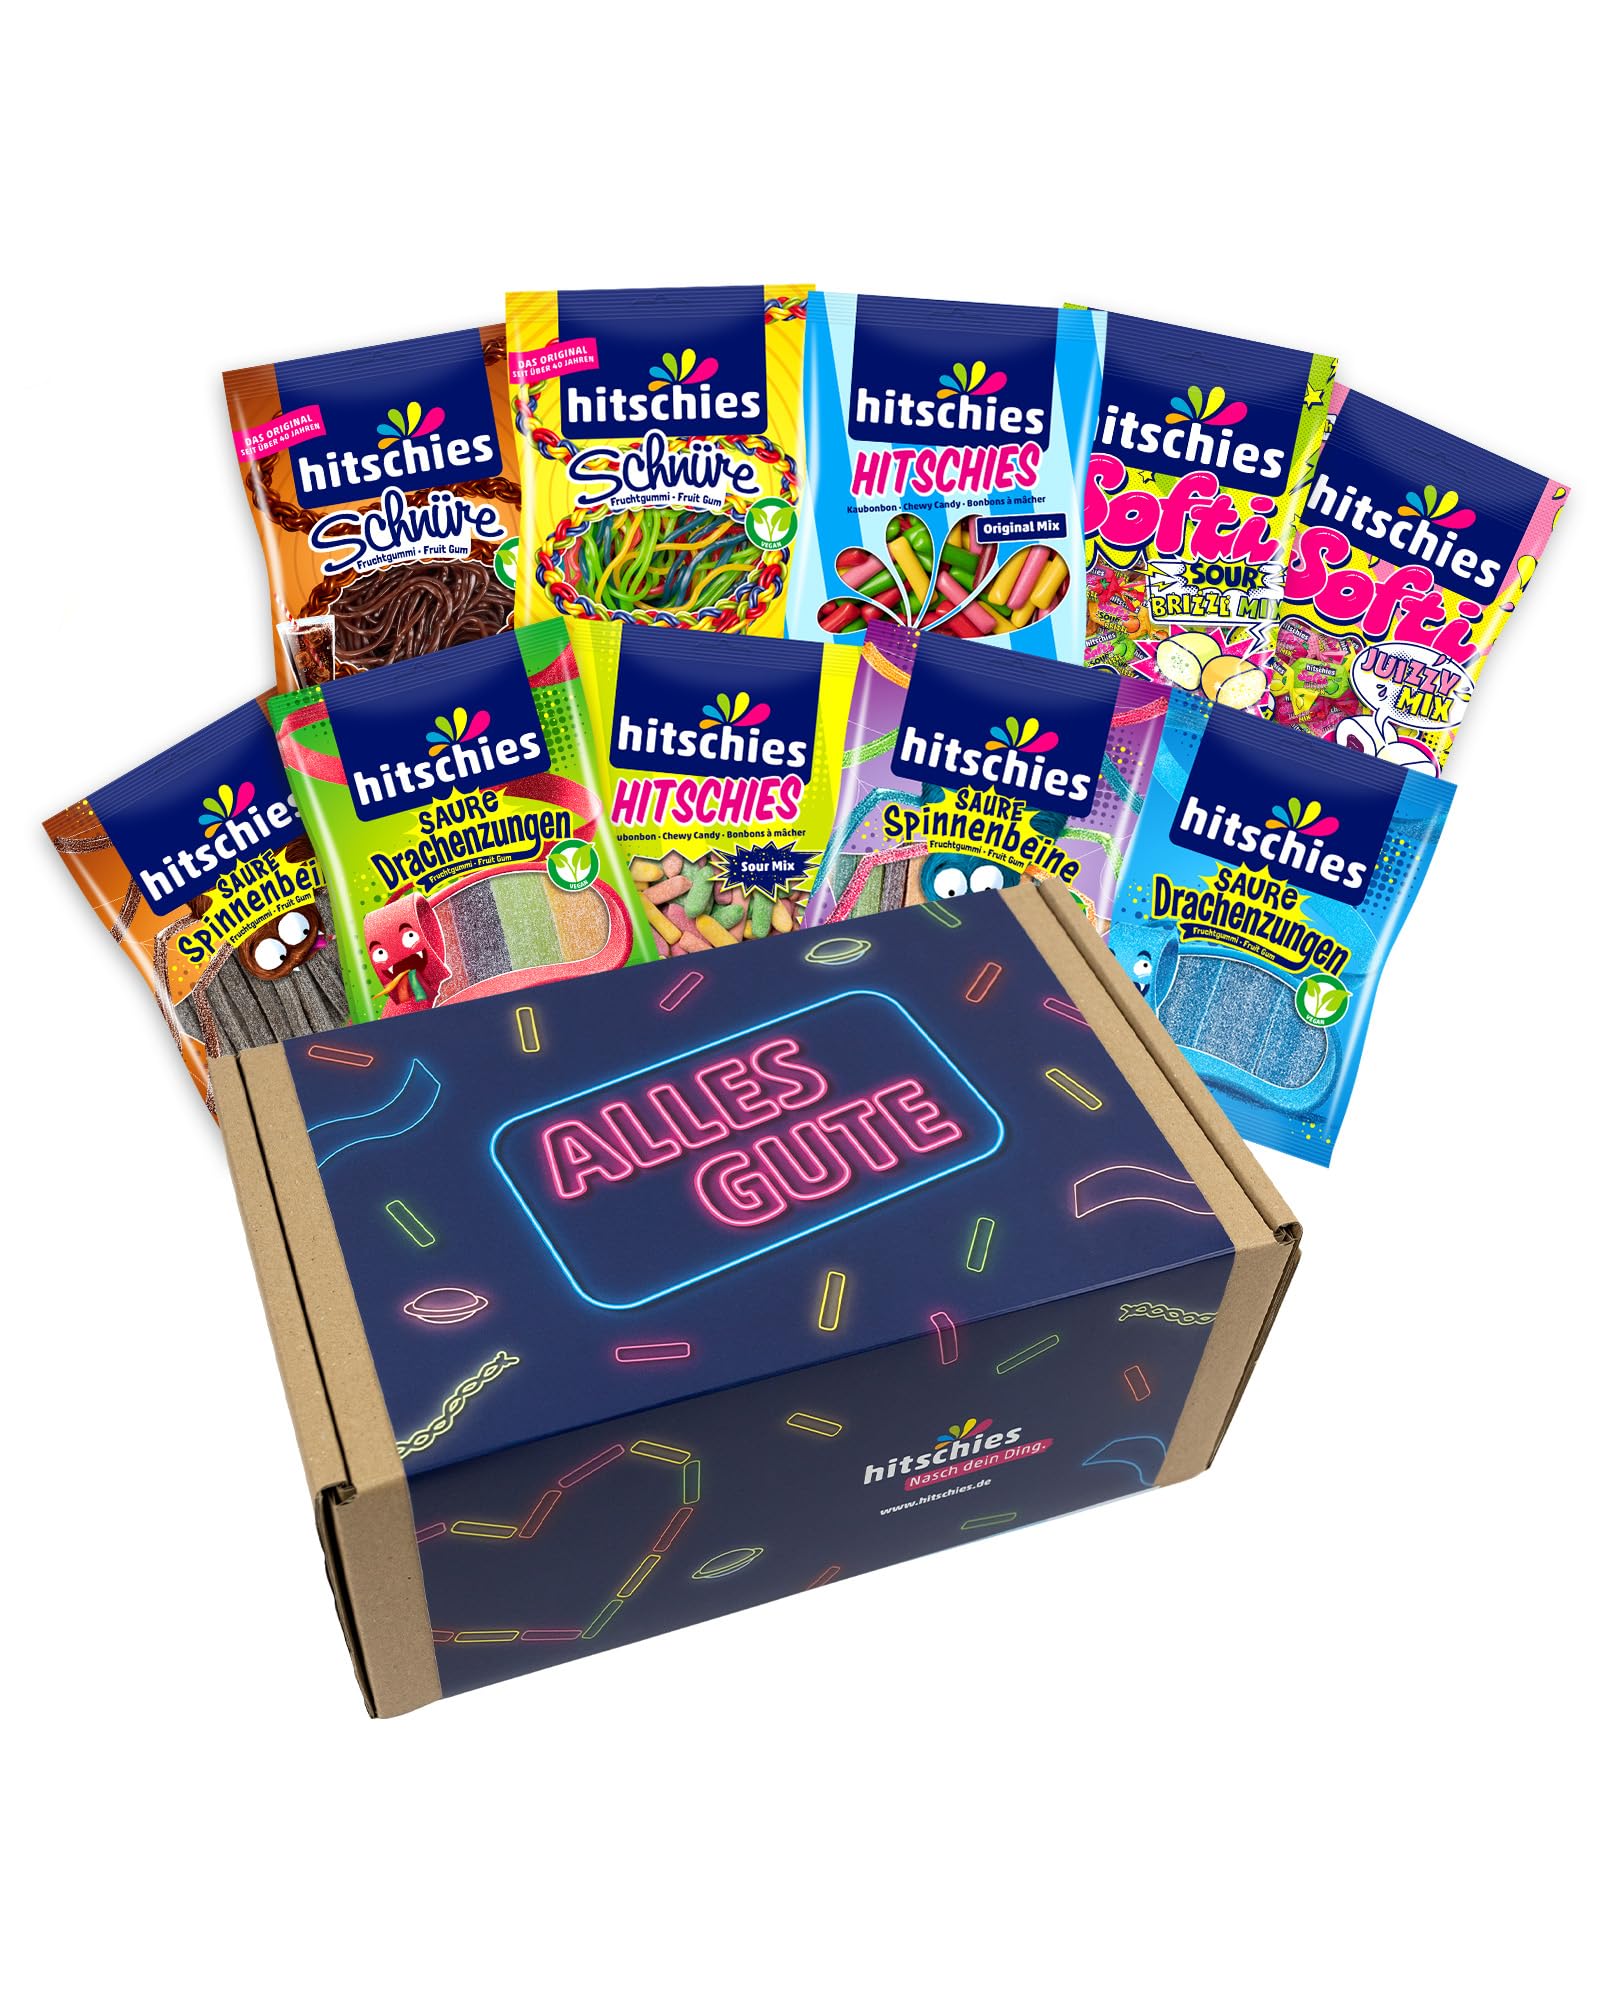 hitschies Geschenkbox Alles Gute - Süßigkeiten Box mit 10 hitschies - Fruchtig-leckeres Naschvergnügen - Fertig verpackt - Boxmaße: 31x18x13 cm